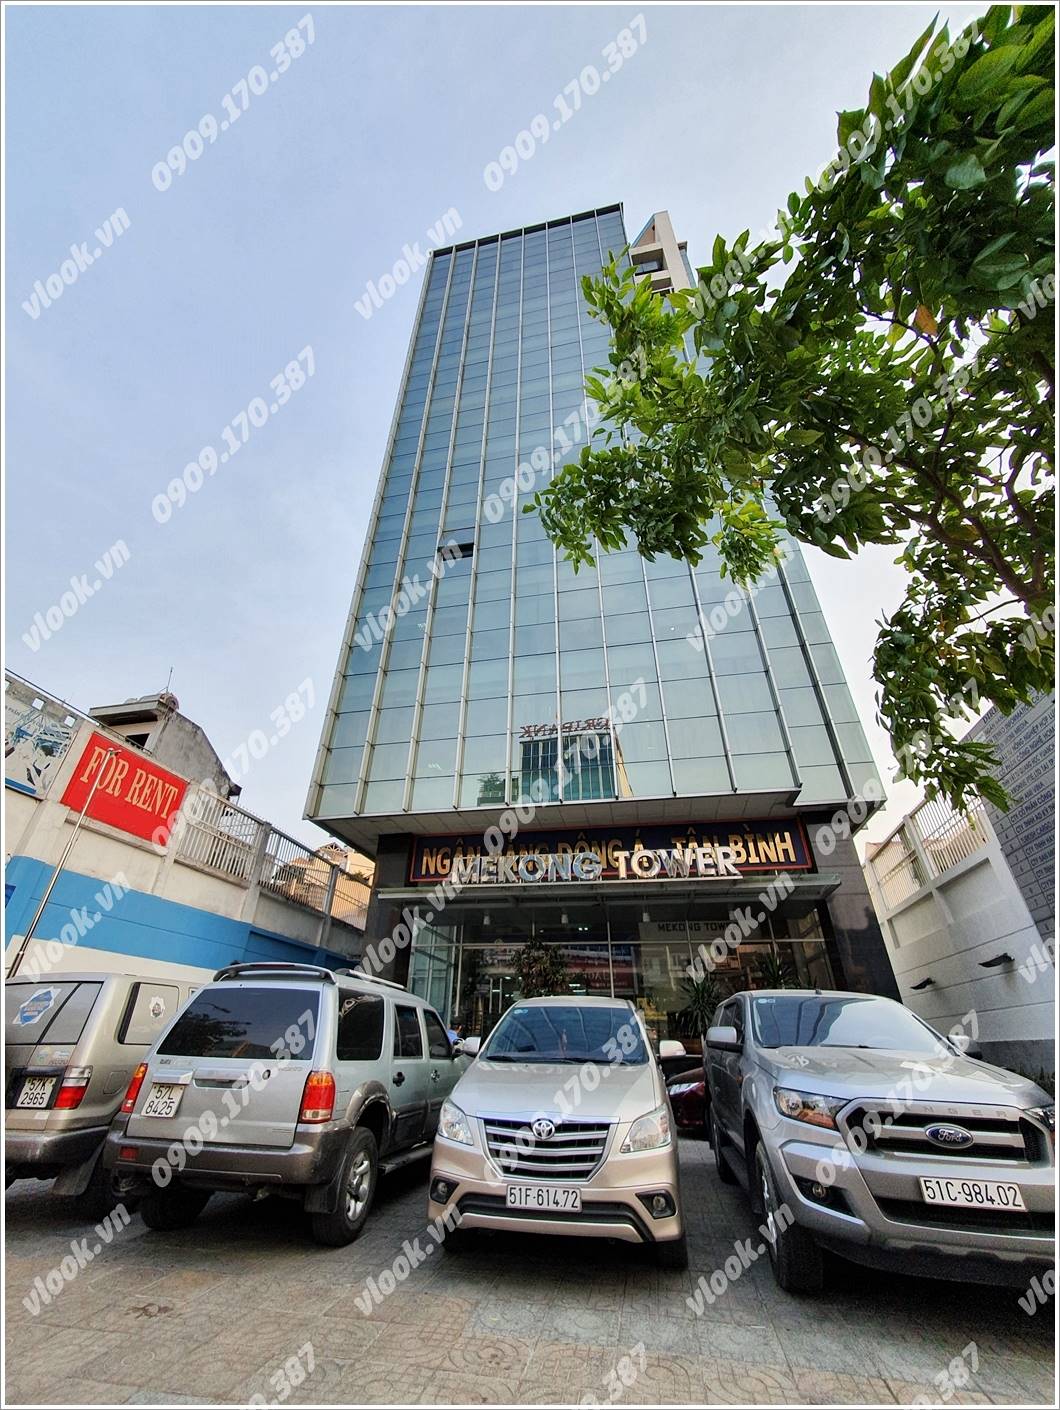 Cao ốc văn phòng cho thuê tòa nhà Mekong Tower, Cộng Hòa, Quận Tân Bình, TPHCM - vlook.vn